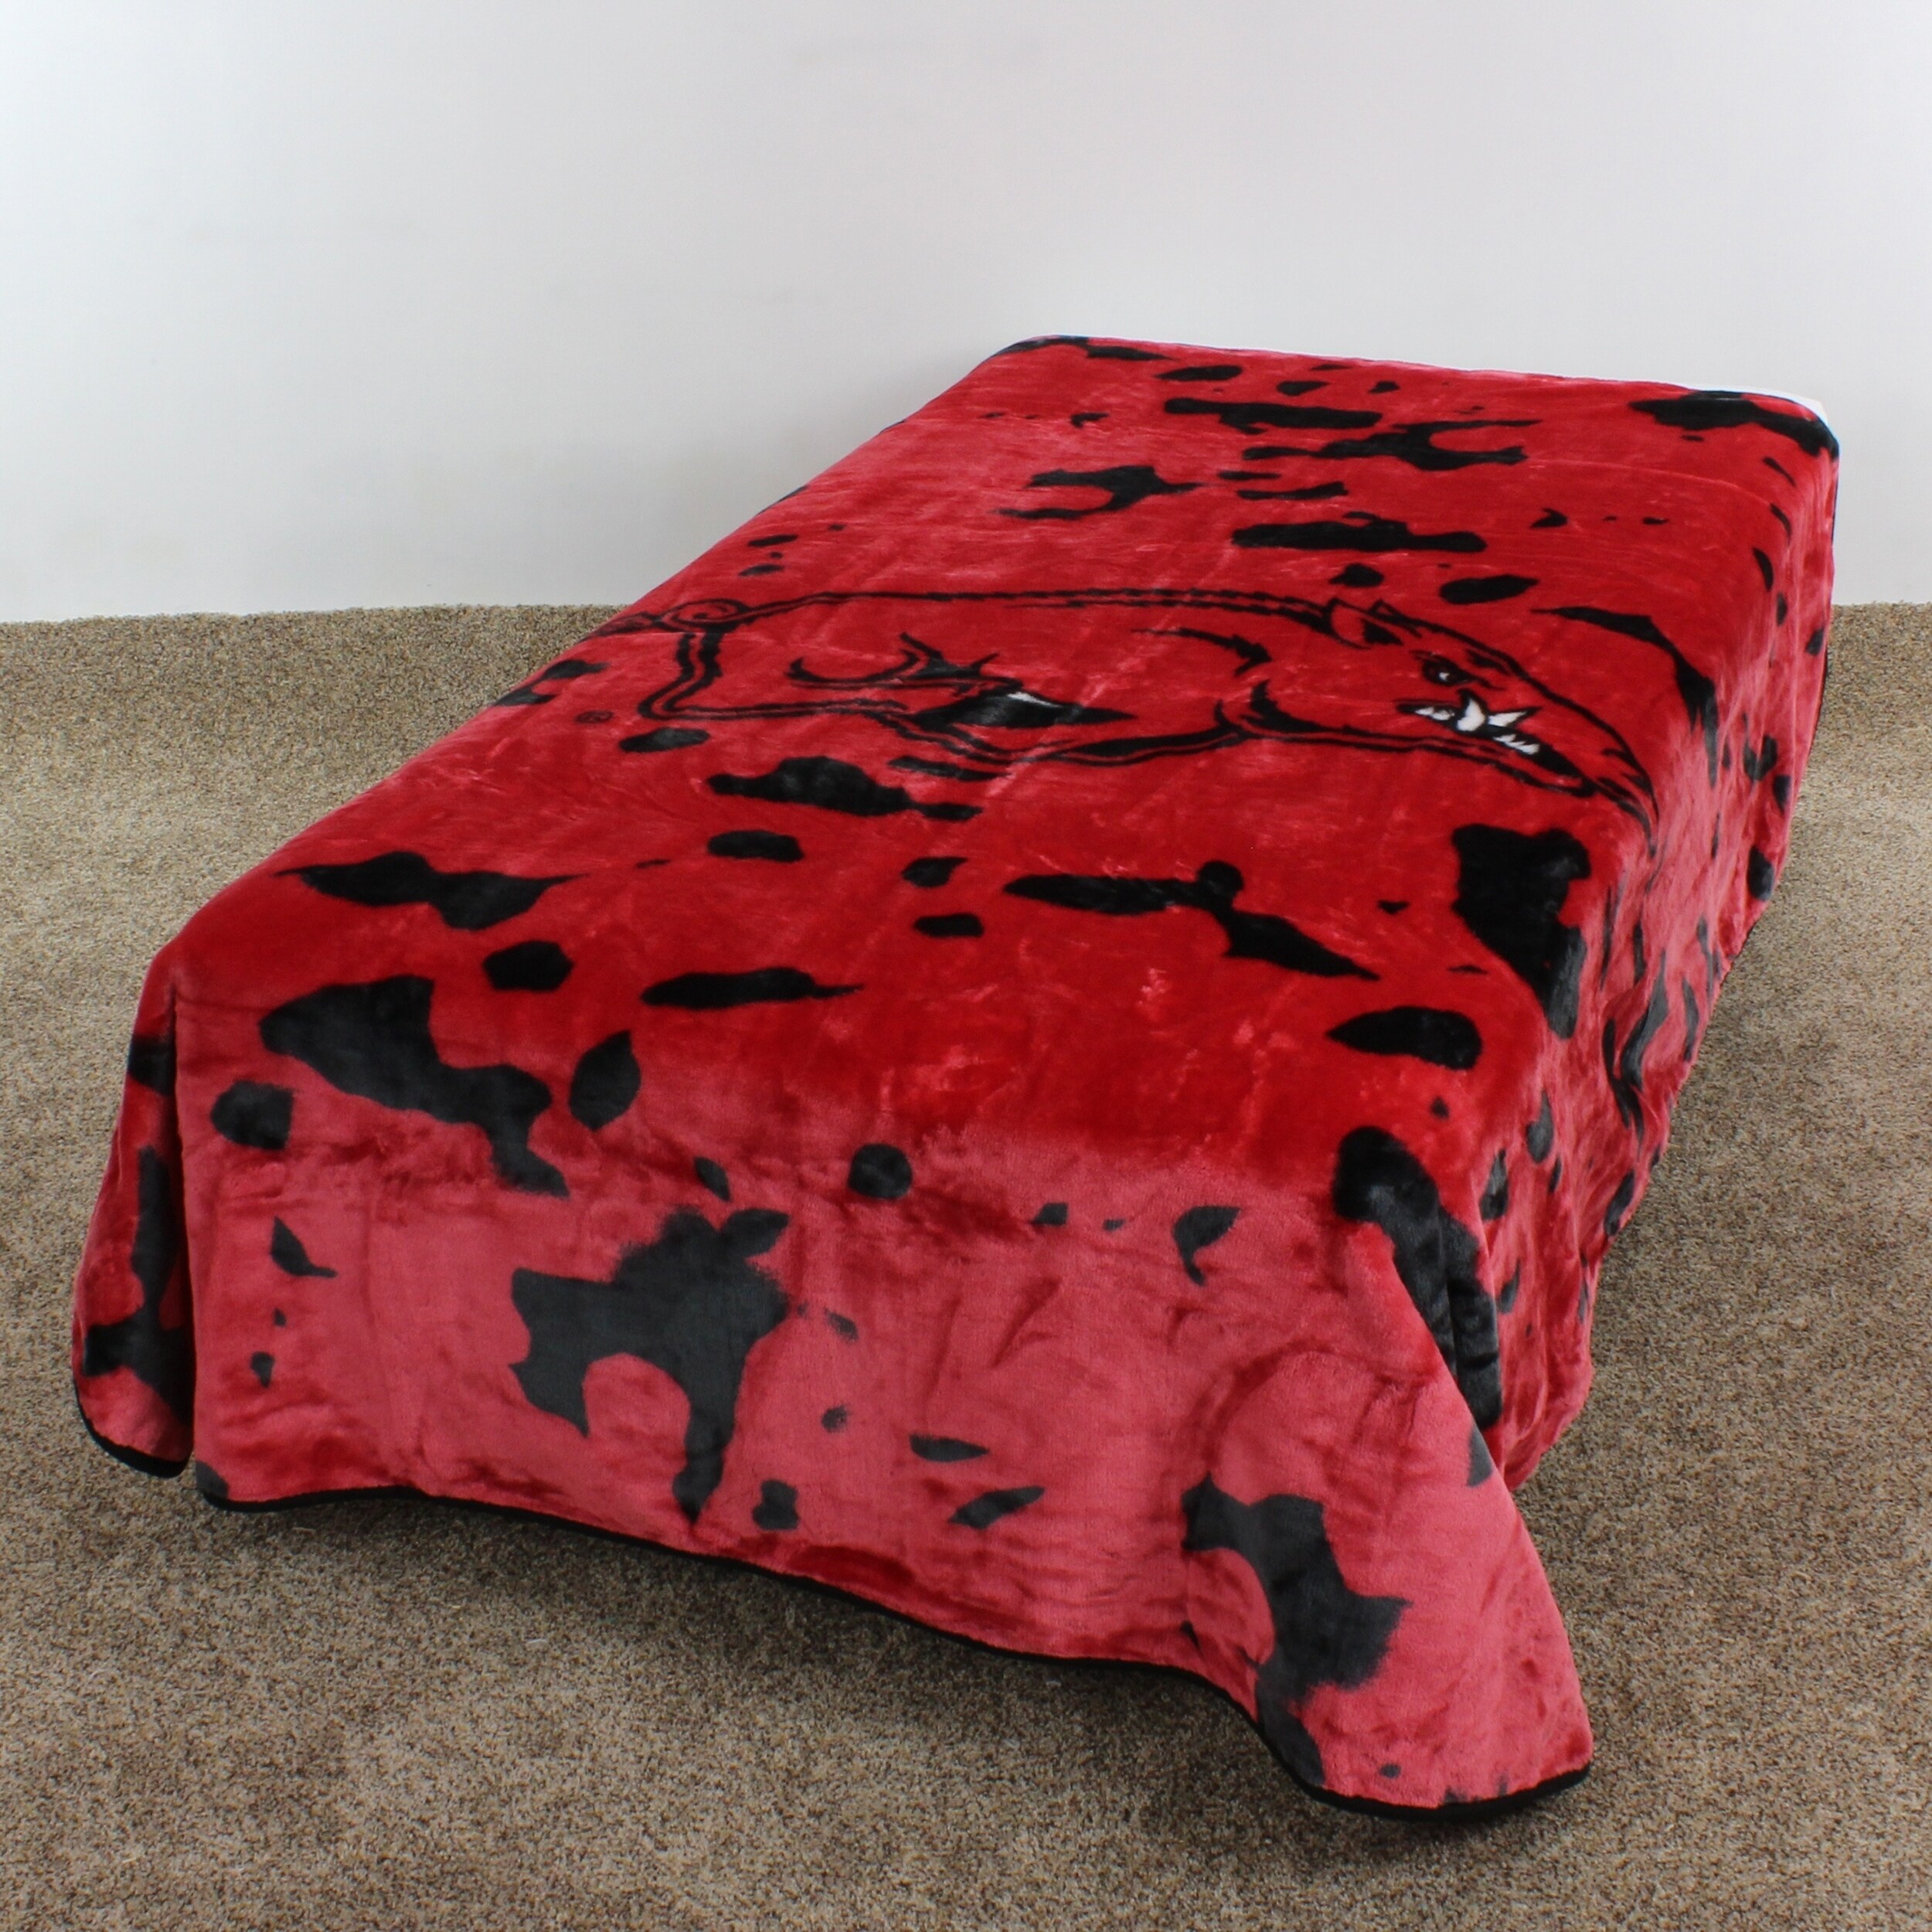 College Covers Arkansas Razorbacks Huge Raschel Throw Blanket, Bedspread, 86" x 63" - image 2 of 8